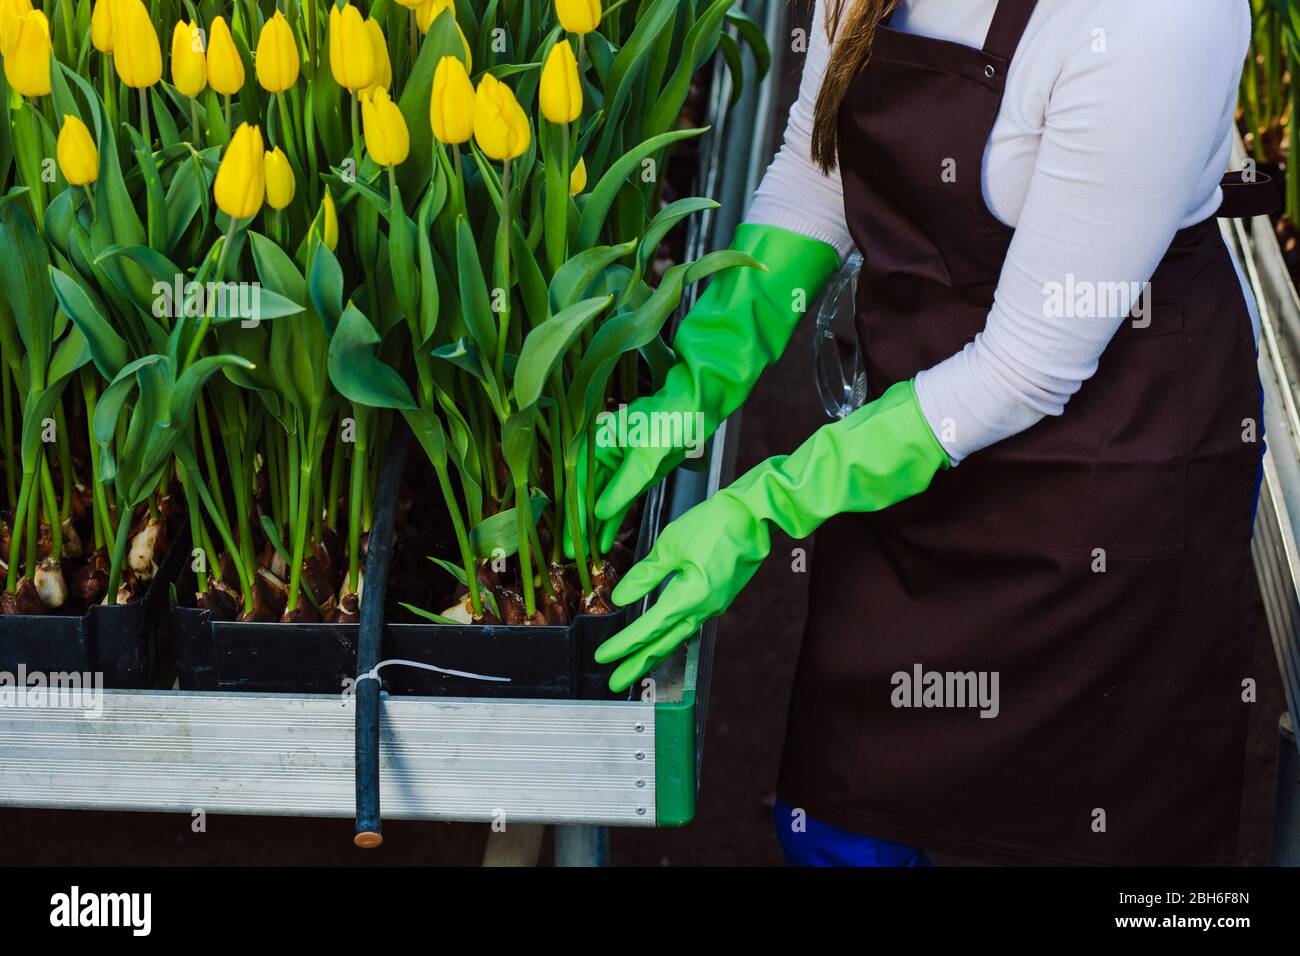 Gärtner kümmert sich um Tulpen, Nahaufnahme der Hände, Tragen von Handschuhen.Tulpe Hydroponisch, im Gewächshaus, industrieller Anbau von Blumen Stockfoto